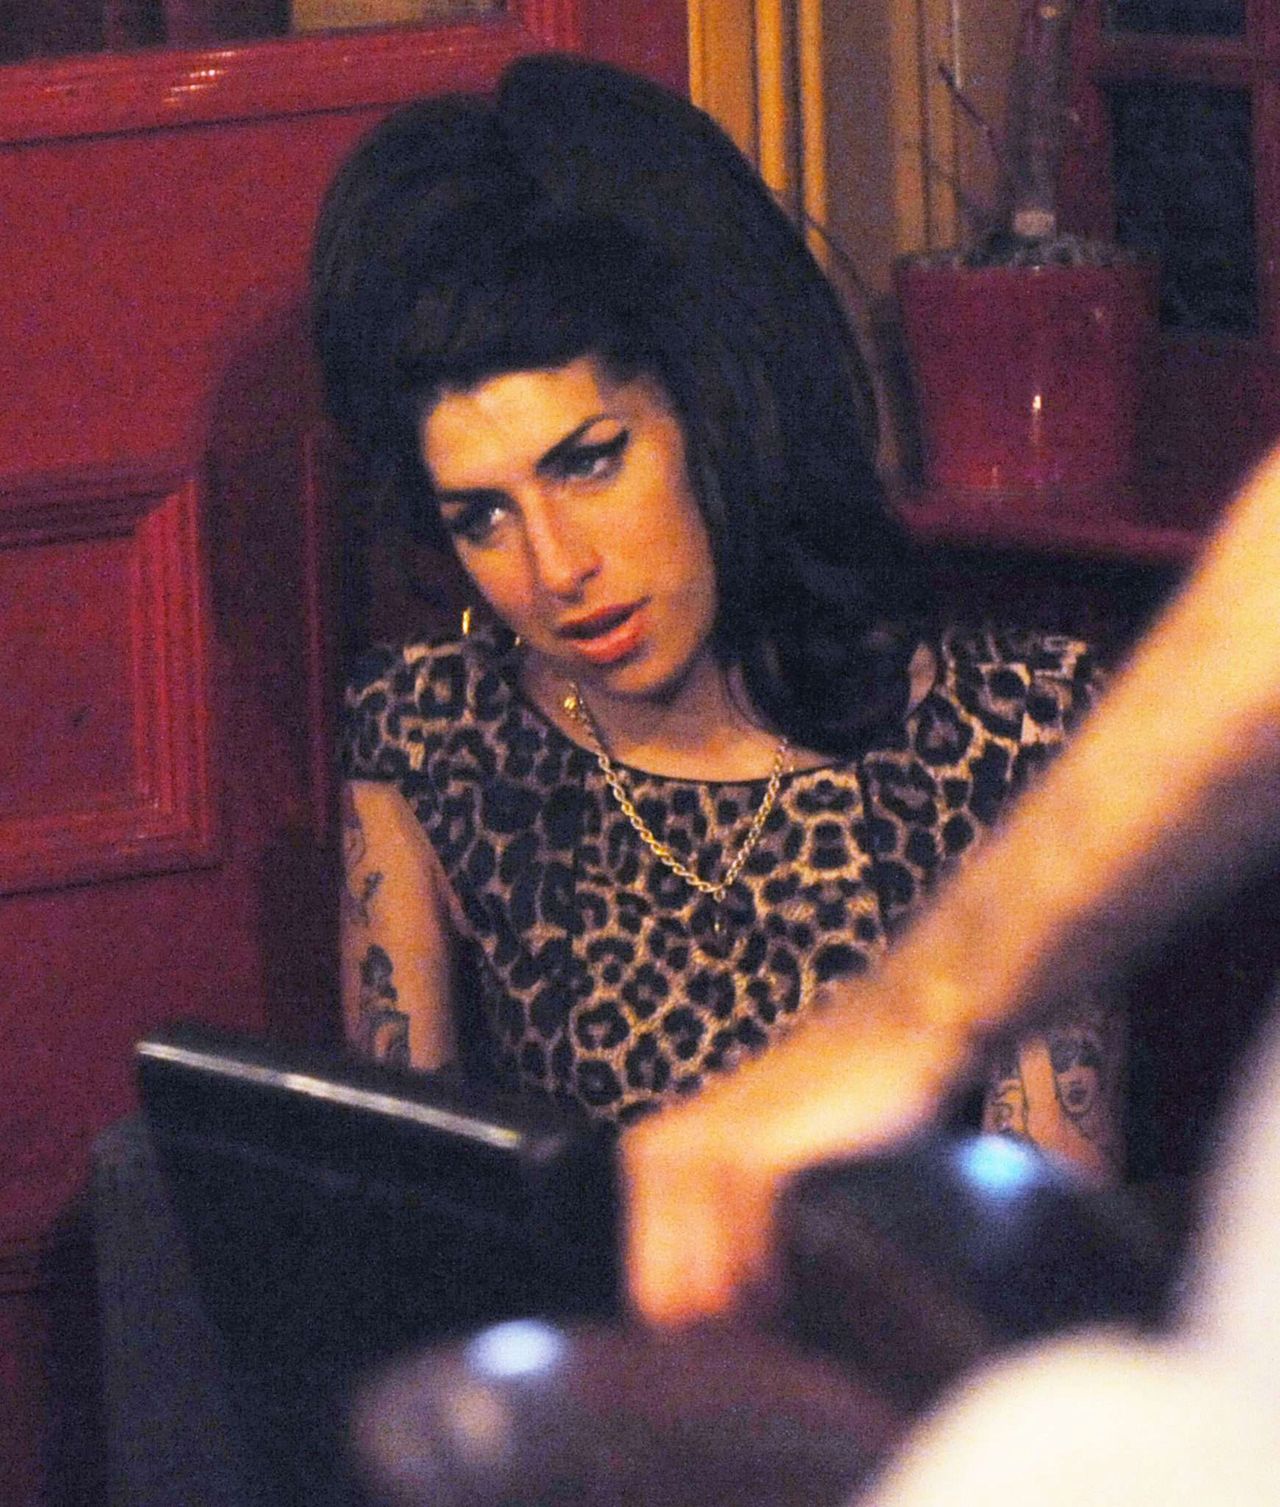 Nowa piosenka z Amy Winehouse